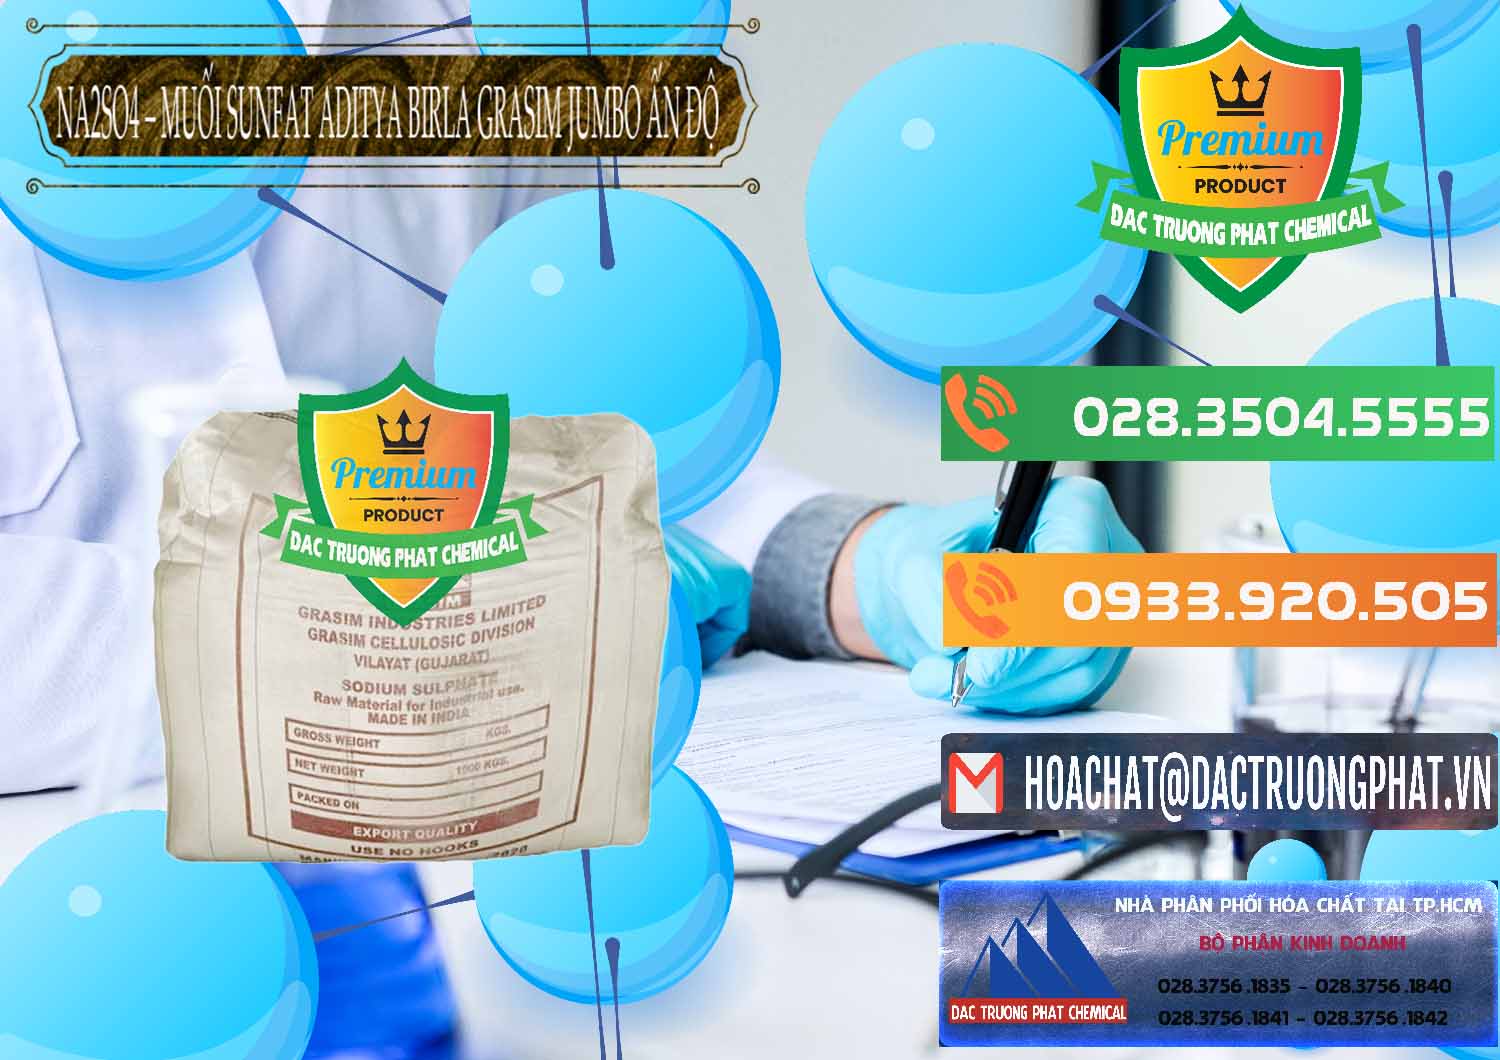 Nơi cung ứng _ bán Sodium Sulphate - Muối Sunfat Na2SO4 Jumbo Bành Aditya Birla Grasim Ấn Độ India - 0357 - Nhà phân phối - bán hóa chất tại TP.HCM - hoachatxulynuoc.com.vn